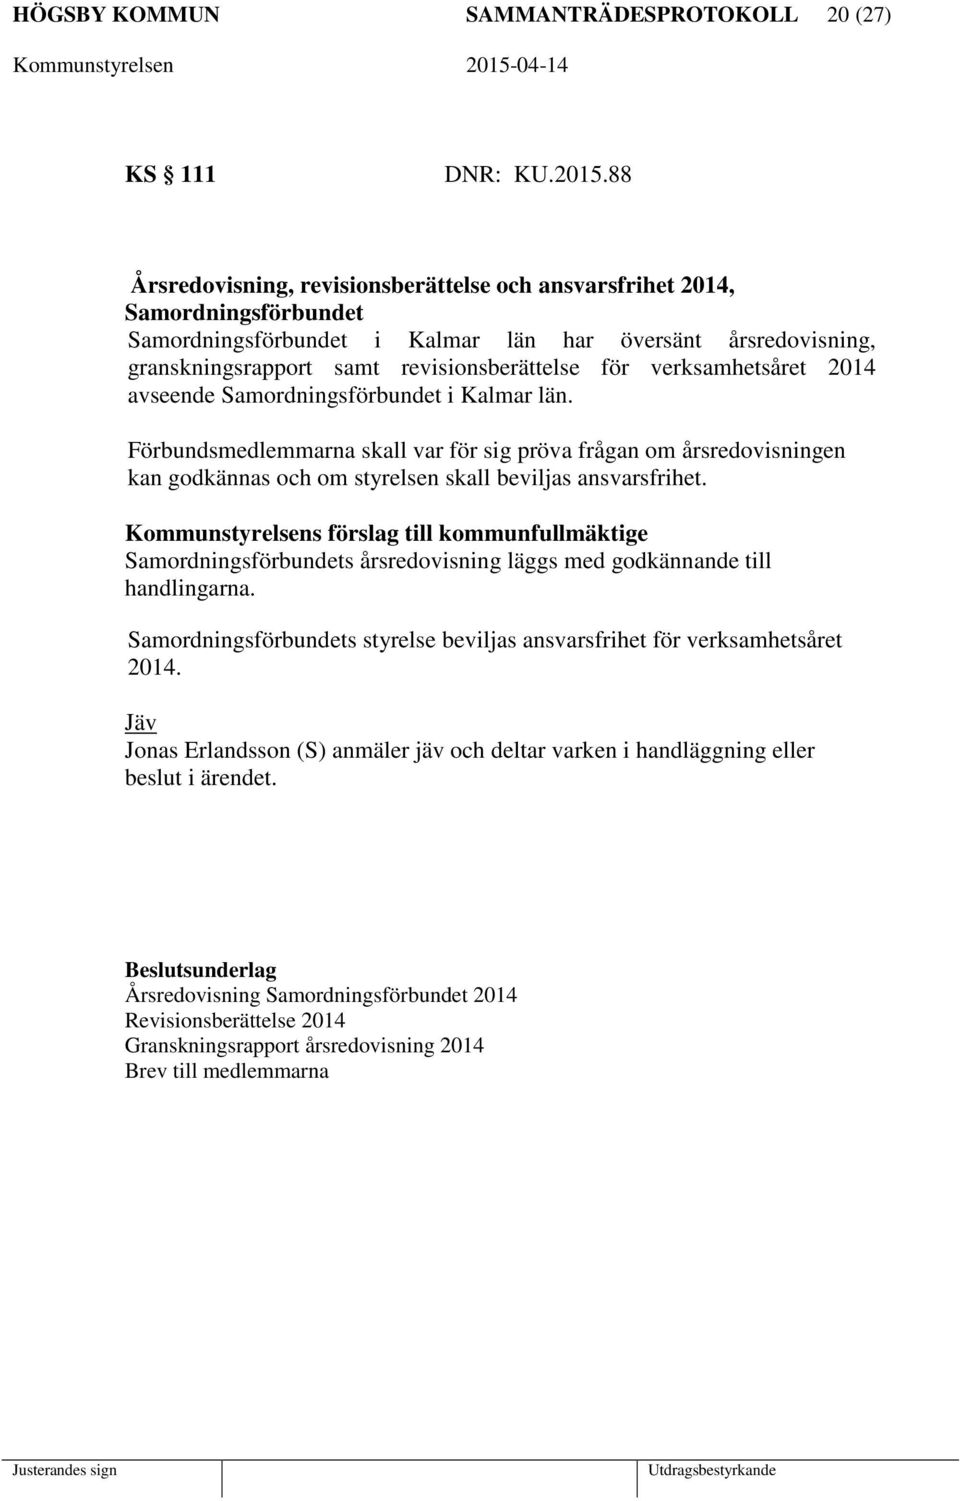 verksamhetsåret 2014 avseende Samordningsförbundet i Kalmar län. Förbundsmedlemmarna skall var för sig pröva frågan om årsredovisningen kan godkännas och om styrelsen skall beviljas ansvarsfrihet.